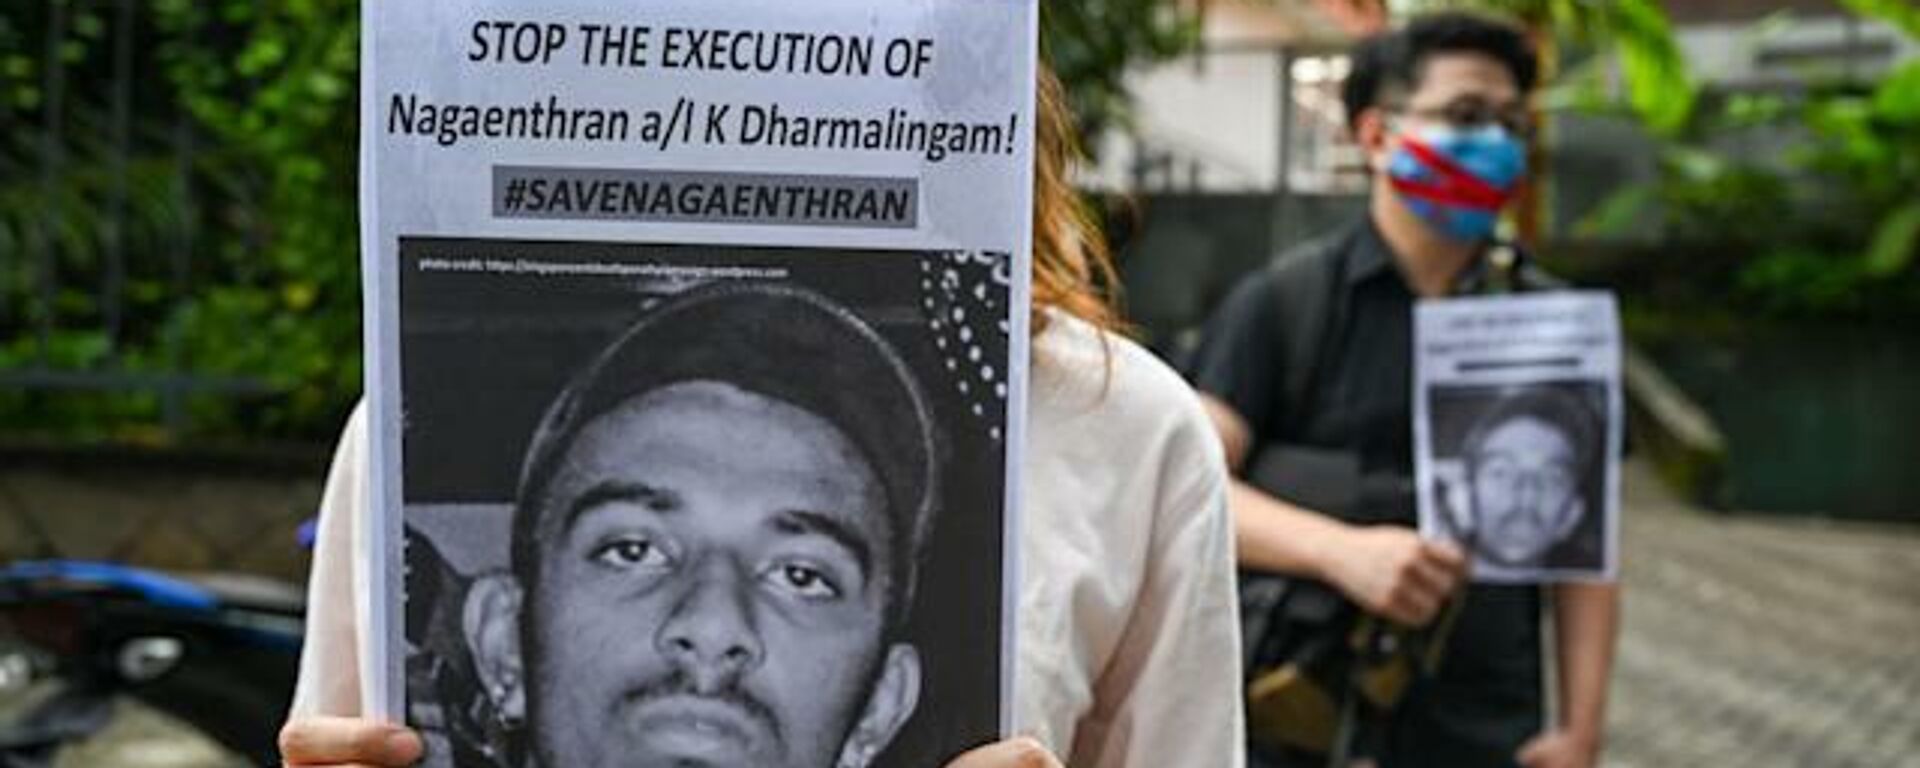 Singapur’da zihinsel engelli olarak kabul edilen 69 IQ seviyesine sahip olan Nagaenthran Dharmalingam isimli uyuşturucu kaçakçısının idam cezası askıya alındı. - Sputnik Türkiye, 1920, 08.11.2021